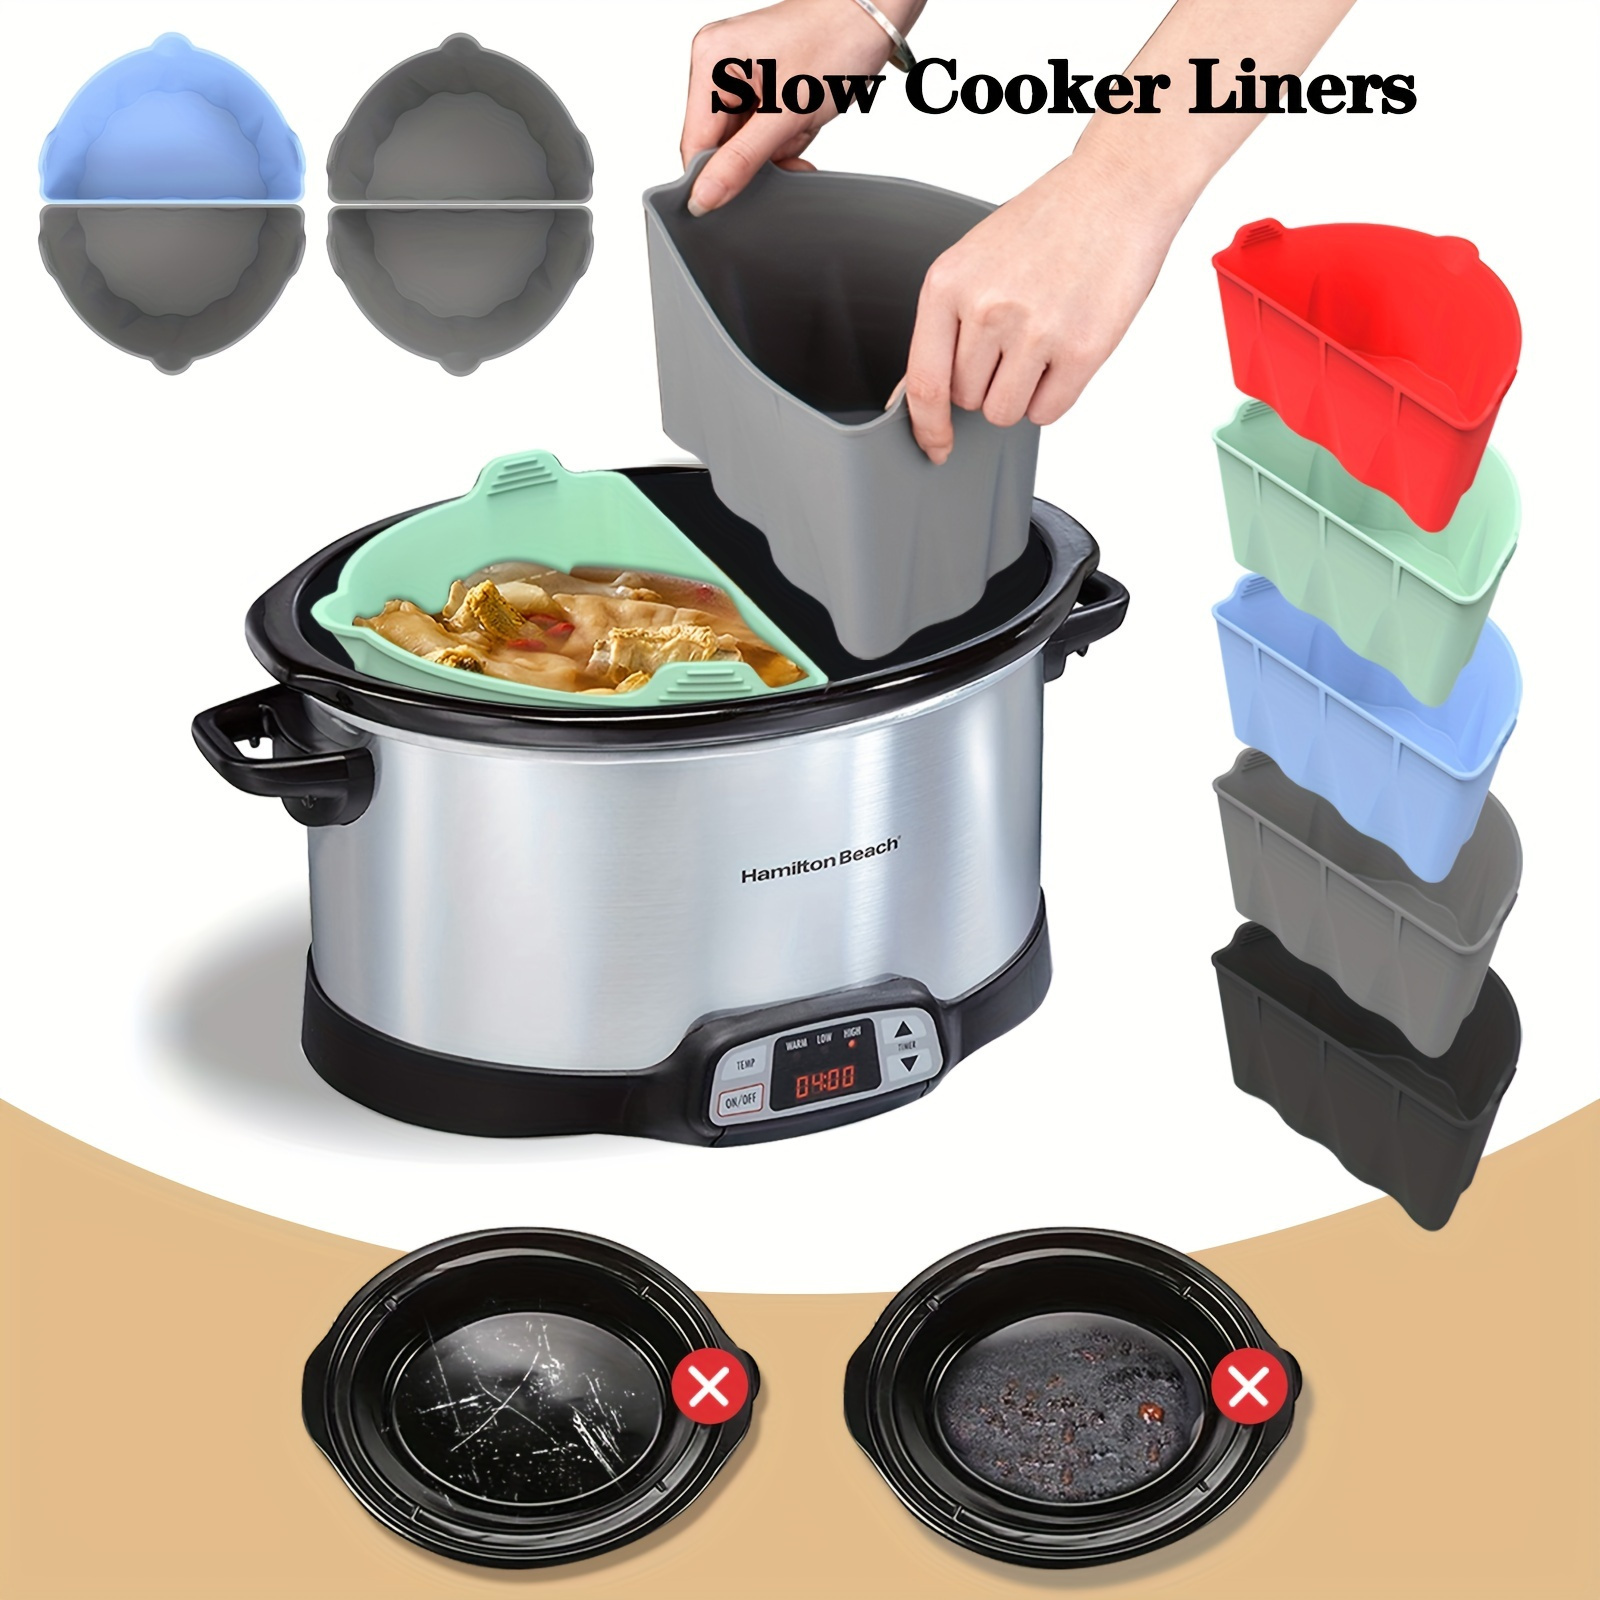  Silicone Crock Pot Liner Crockpot Divider, 6 Quart Crock Pot  Liners Reusable, Reusable Slow Cooker Liner, Suitable For Microwave, Oven,  7-8 Quart Oval Slow Cooker Crock Pot Black: Home & Kitchen